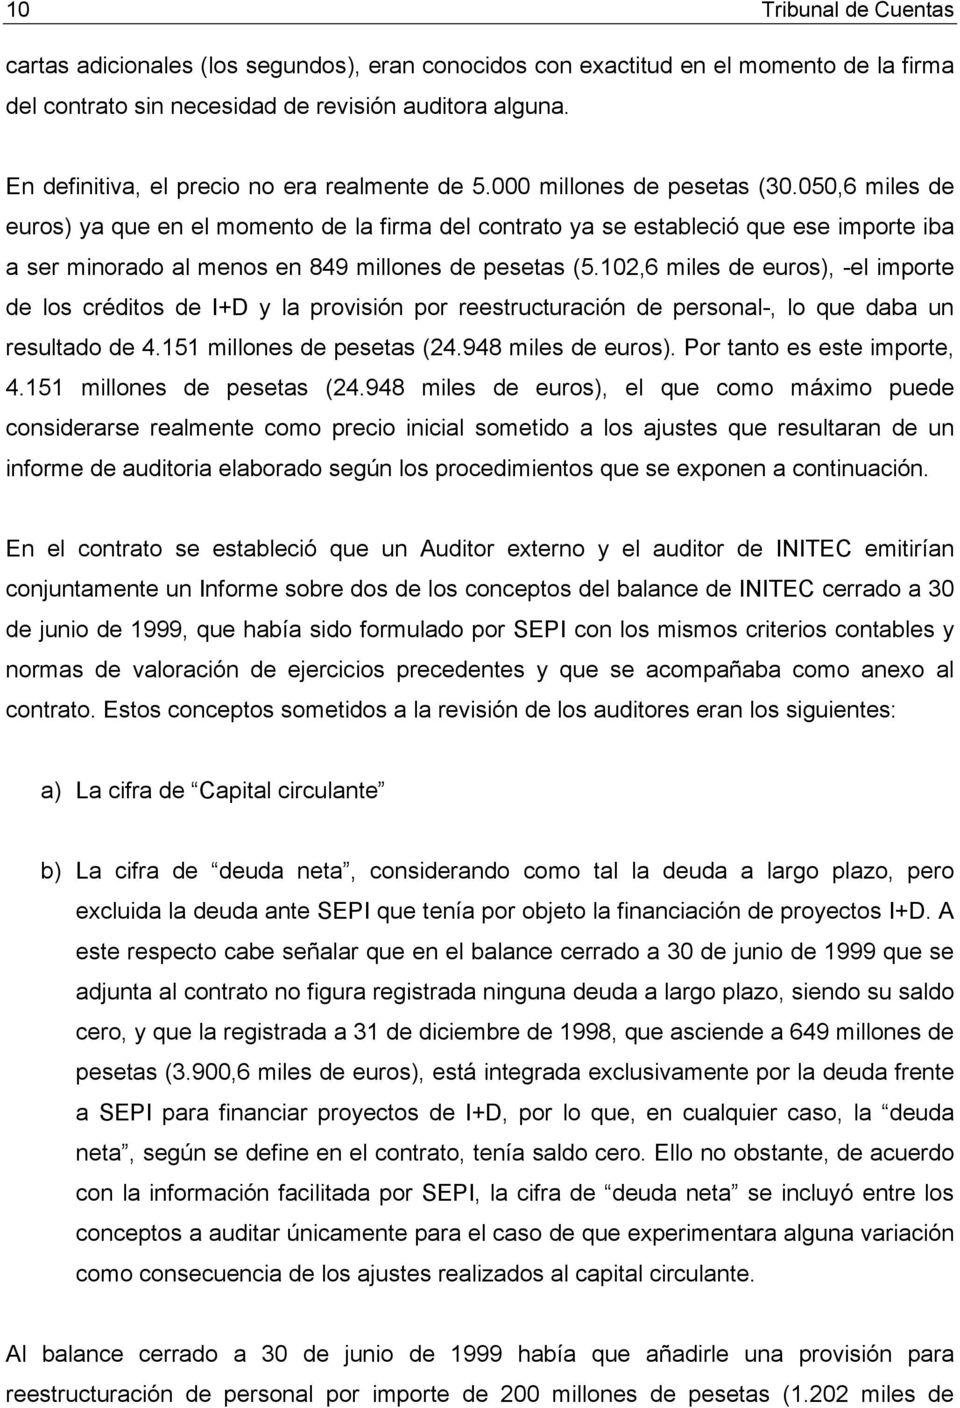 050,6 miles de euros) ya que en el momento de la firma del contrato ya se estableció que ese importe iba a ser minorado al menos en 849 millones de pesetas (5.